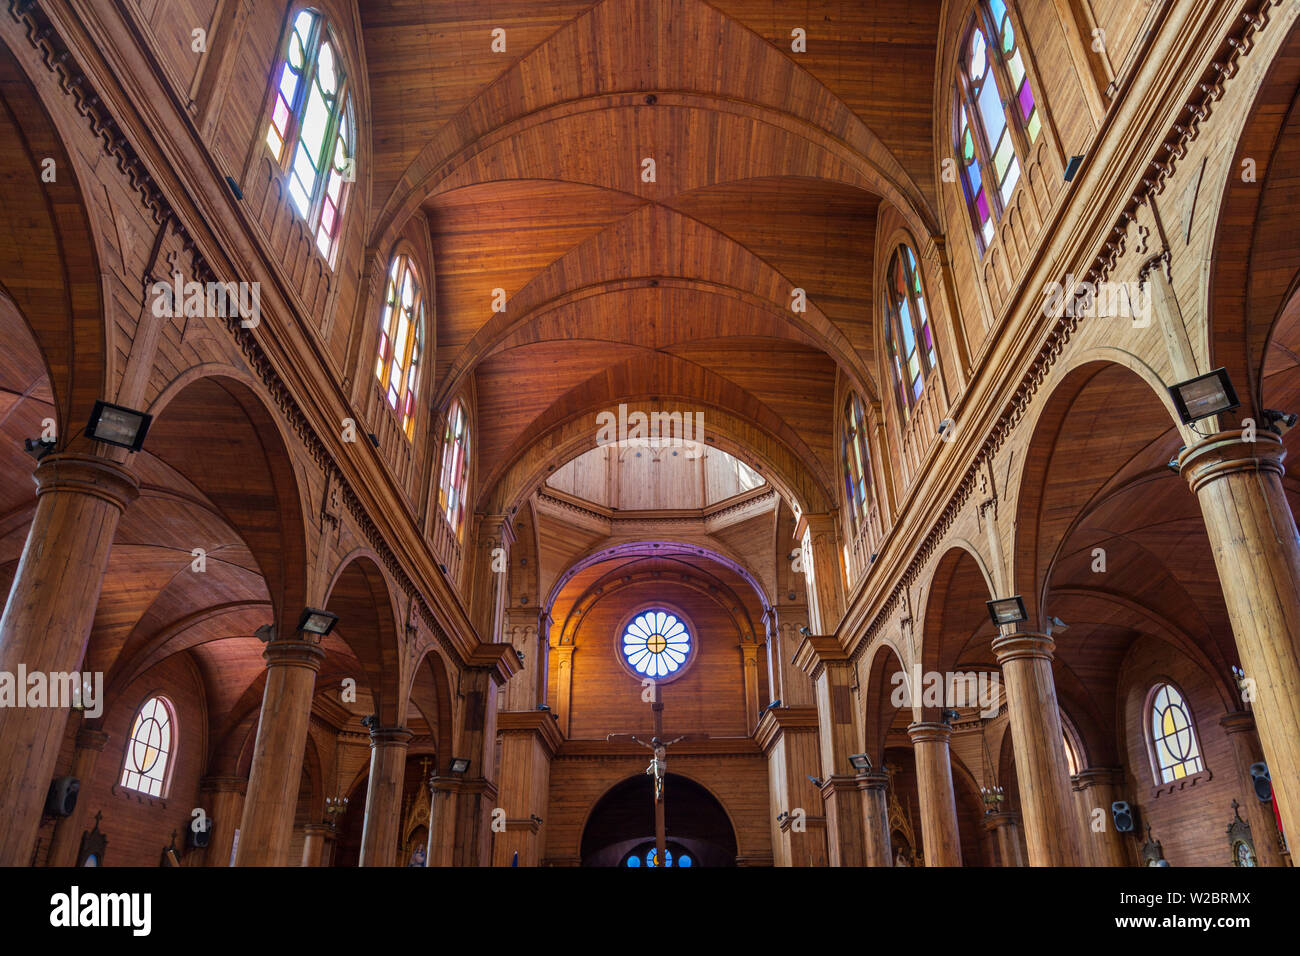 Chile, Chiloe Island, Castro, Iglesia de San Francisco church, interior Stock Photo